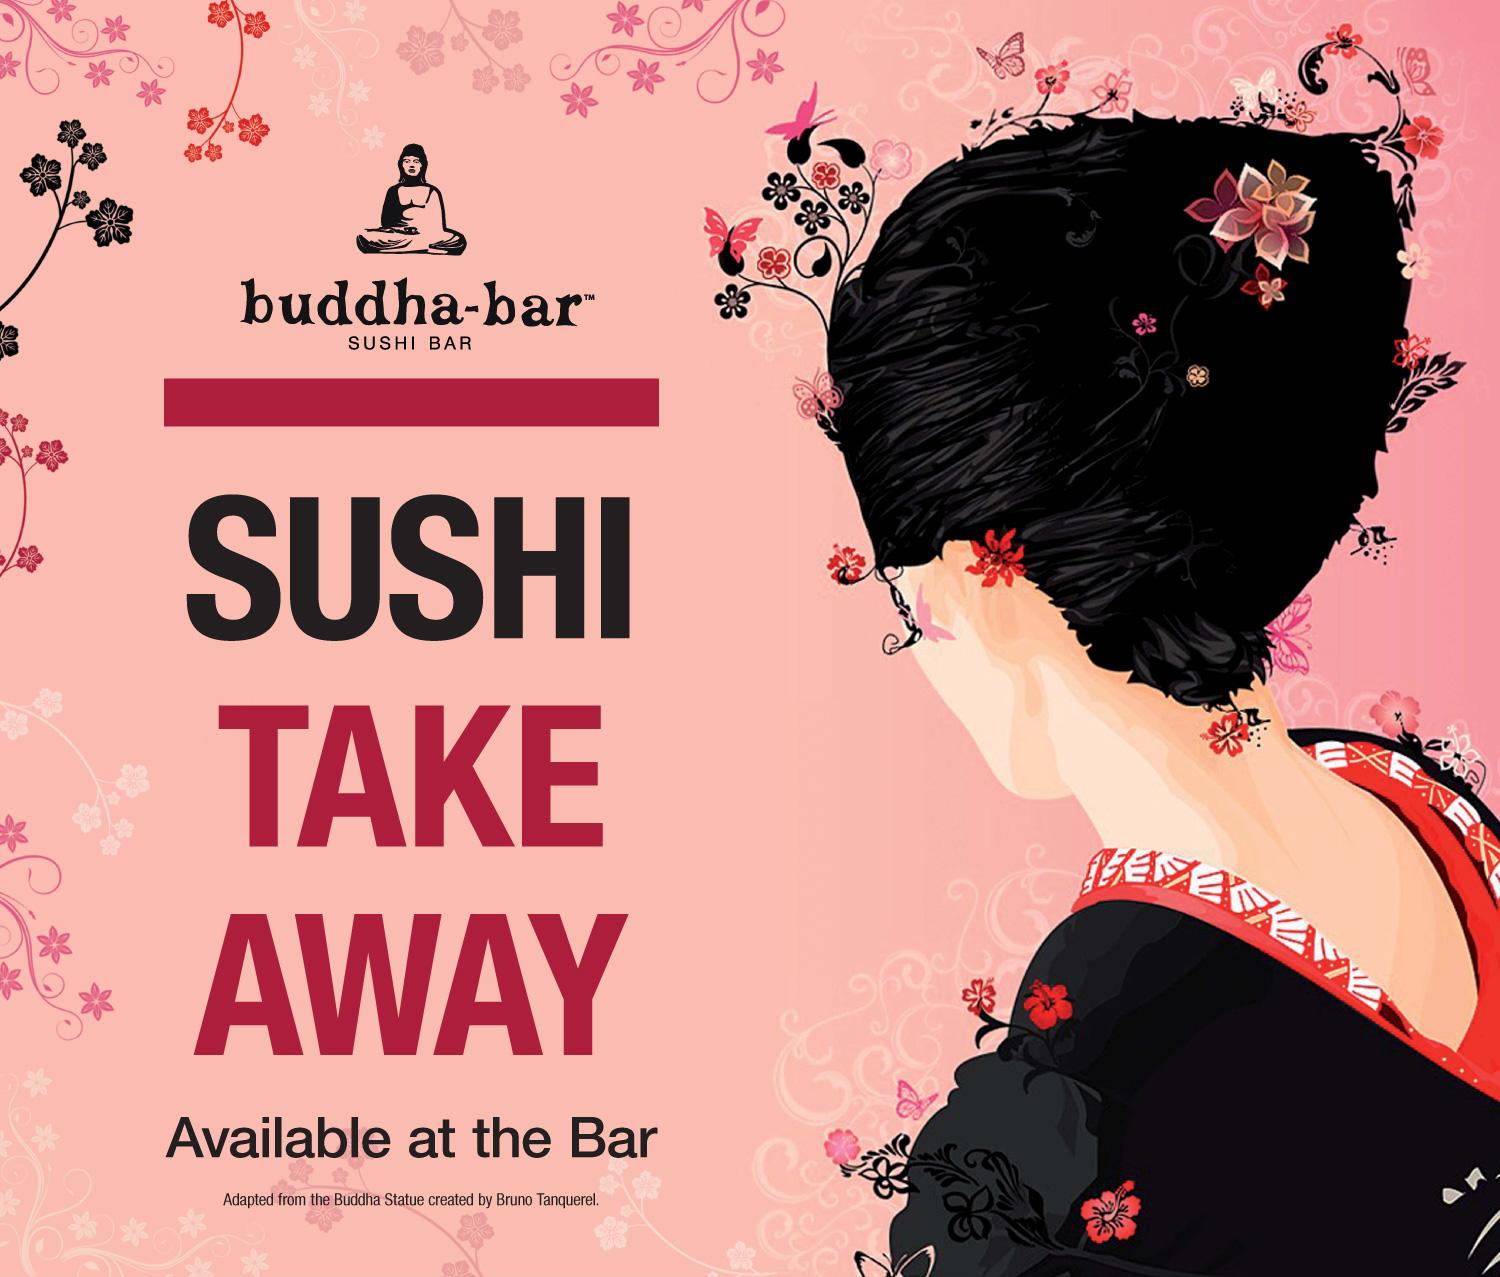 Sushi Take-Away, Buddha-Bar Terrace Budapest